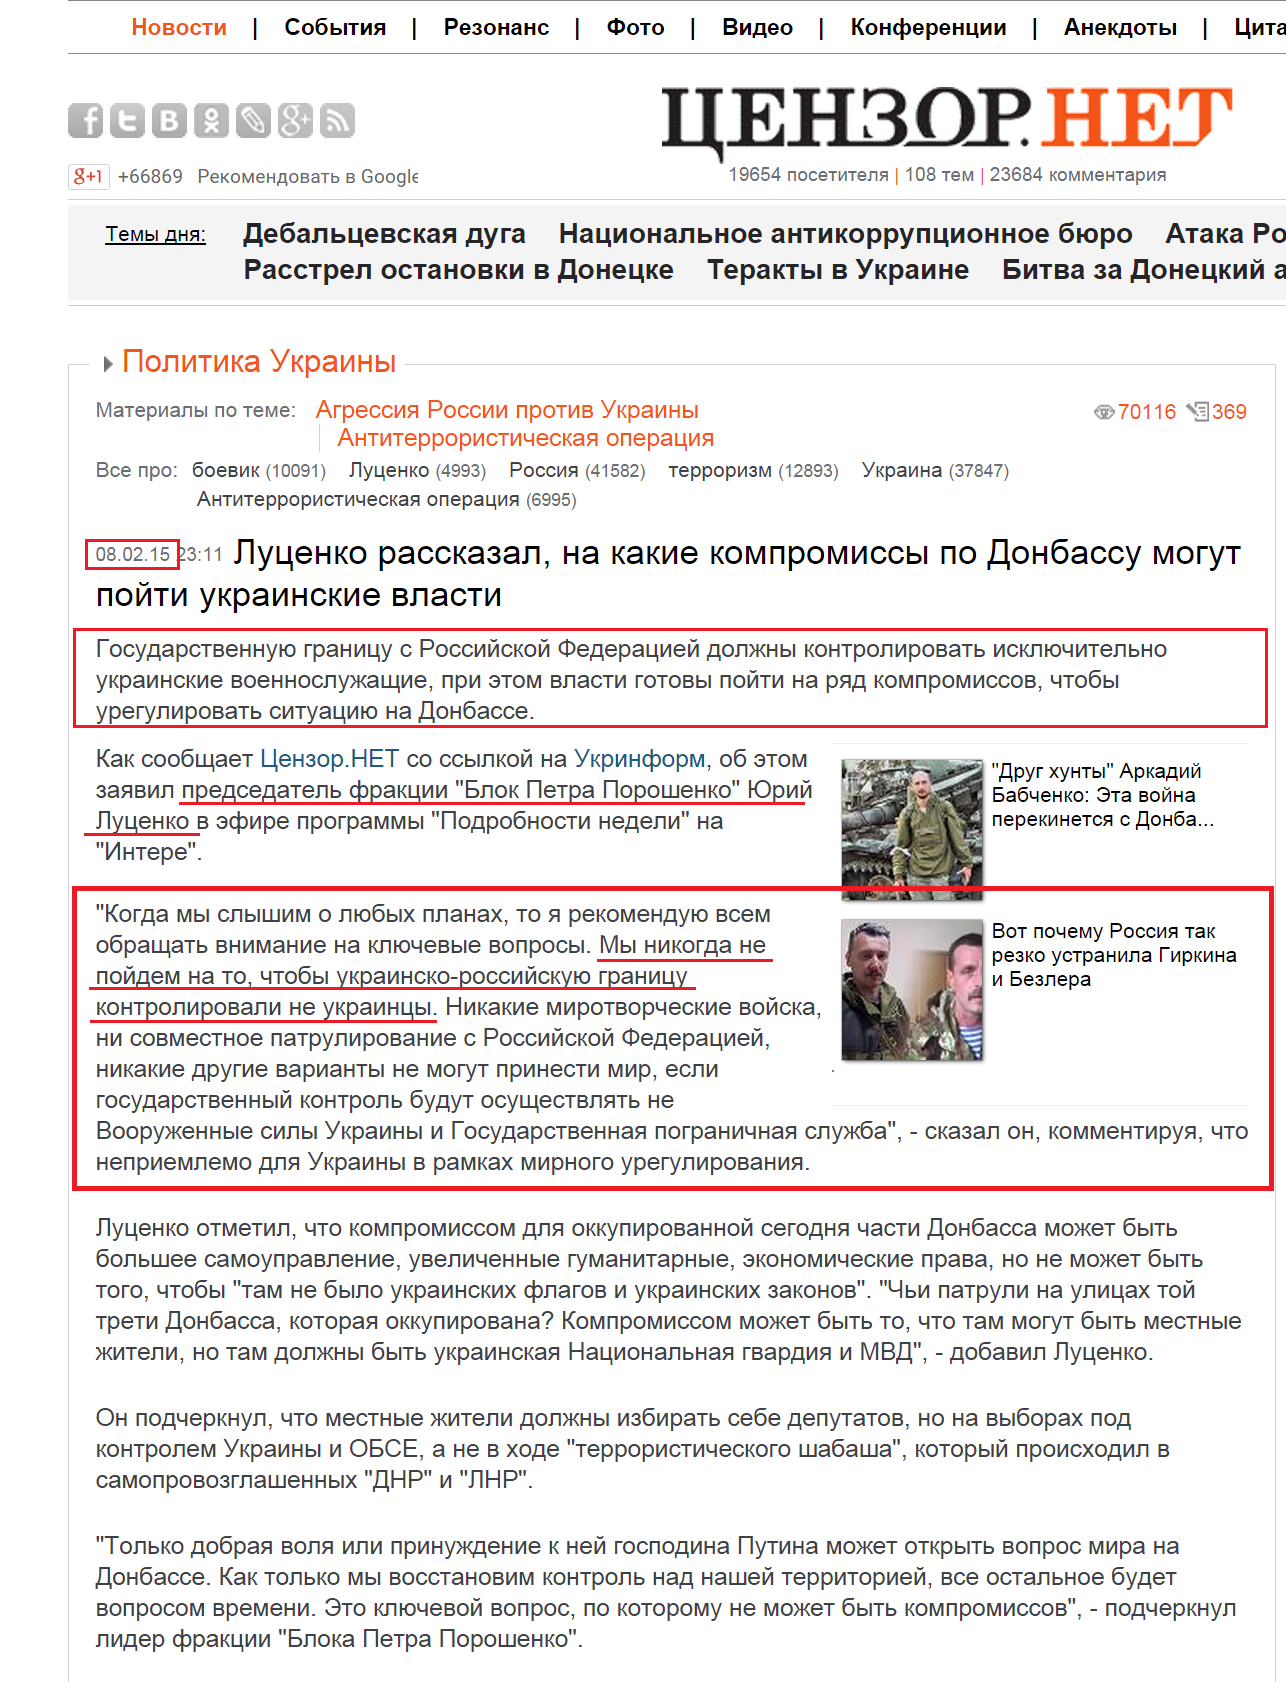 http://censor.net.ua/news/323758/lutsenko_rasskazal_na_kakie_kompromissy_po_donbassu_mogut_poyiti_ukrainskie_vlasti